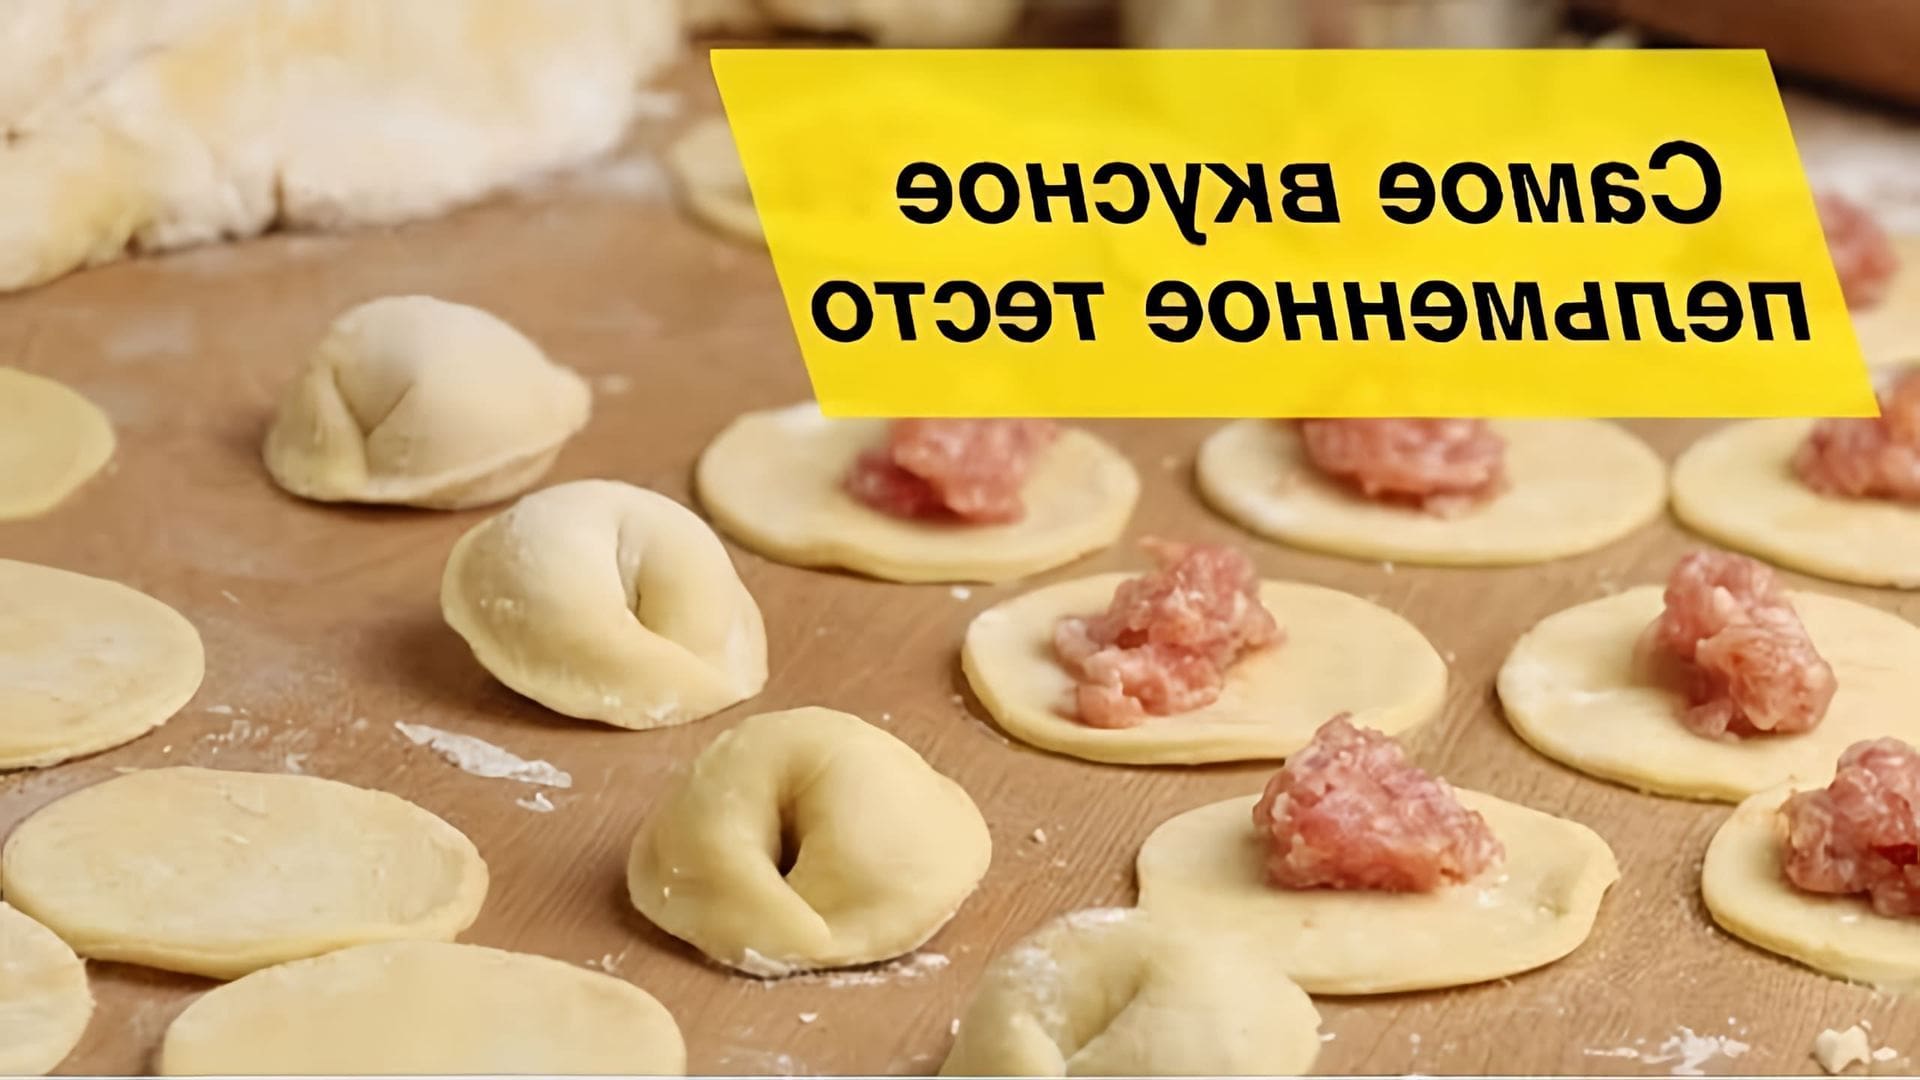 В этом видео демонстрируется процесс приготовления вкусного теста для пельменей по маминому рецепту